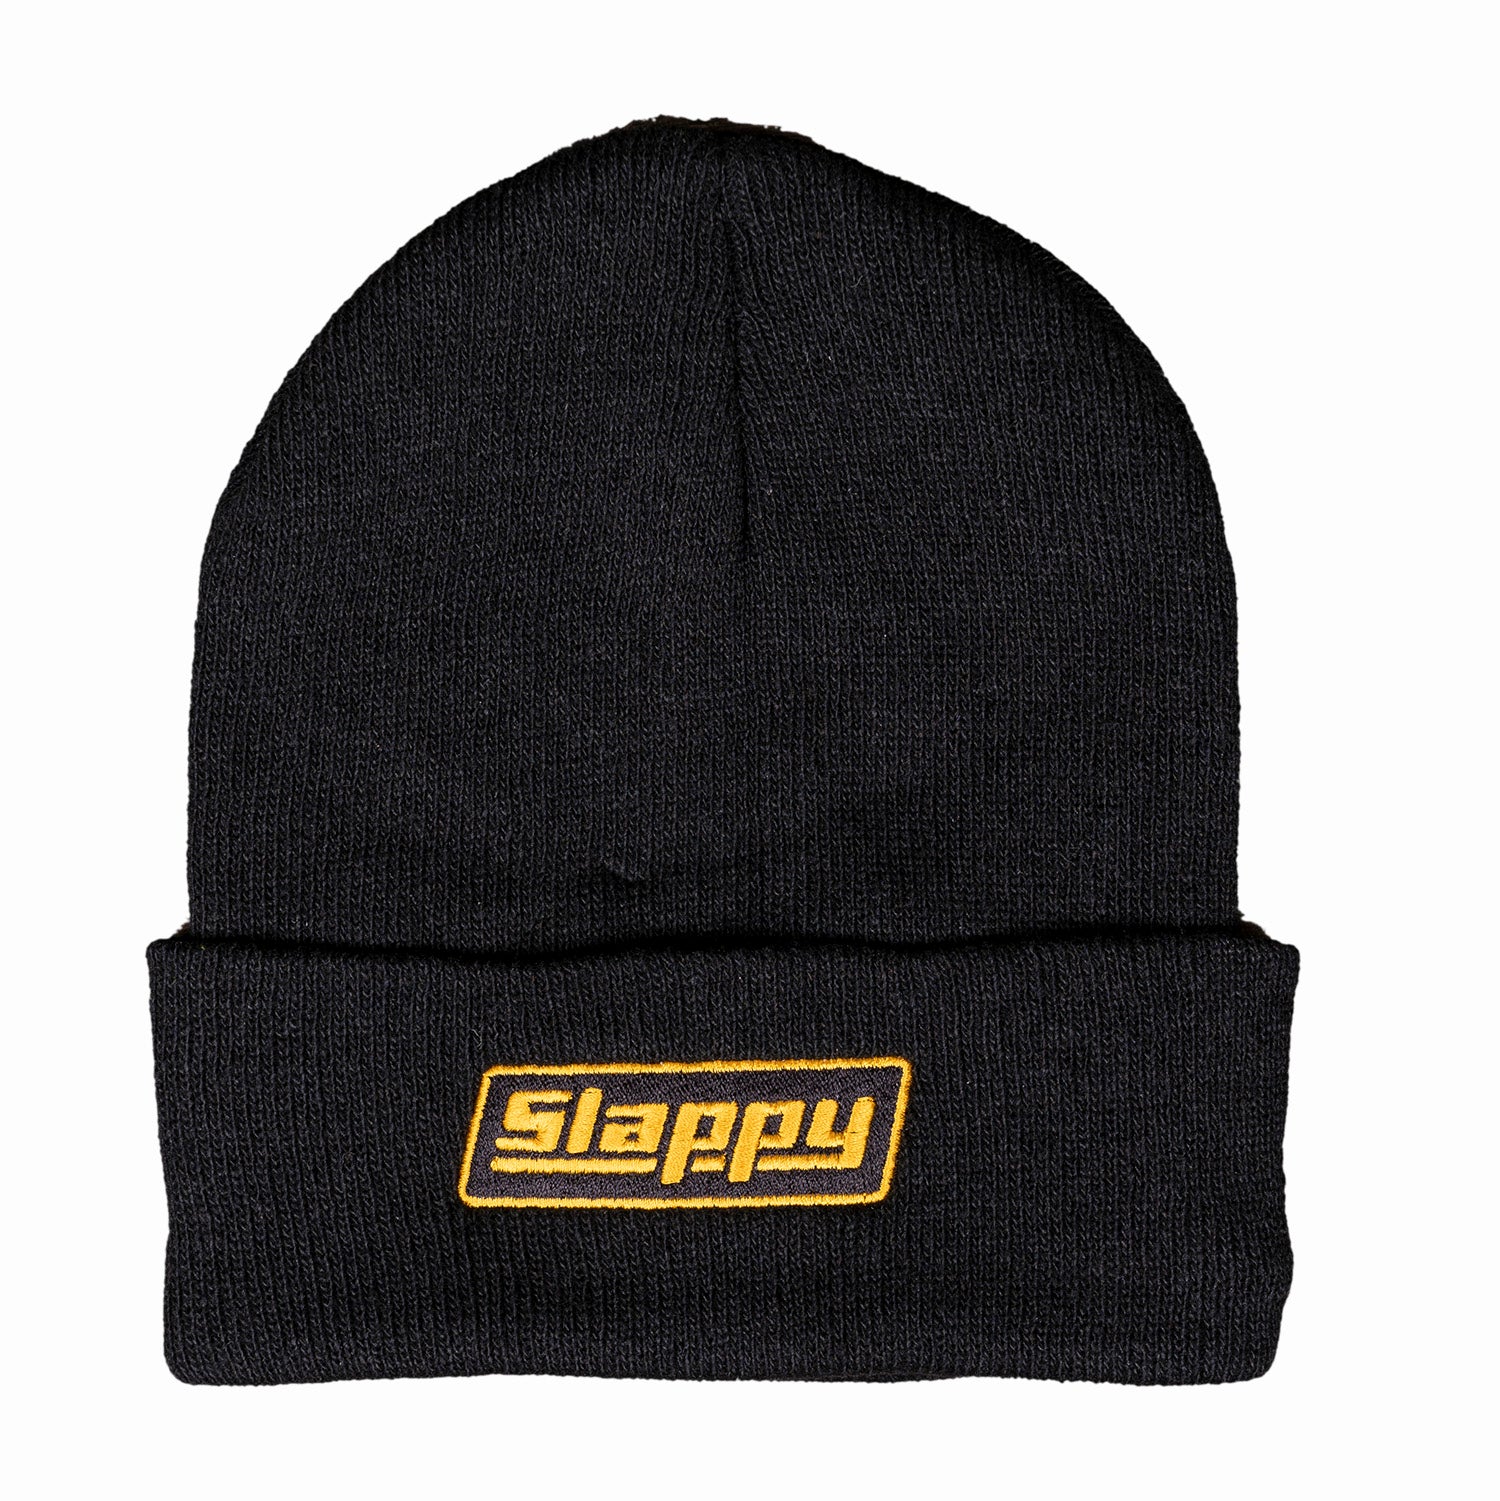 Slappy OG Roll Up Logo Beanie - Black